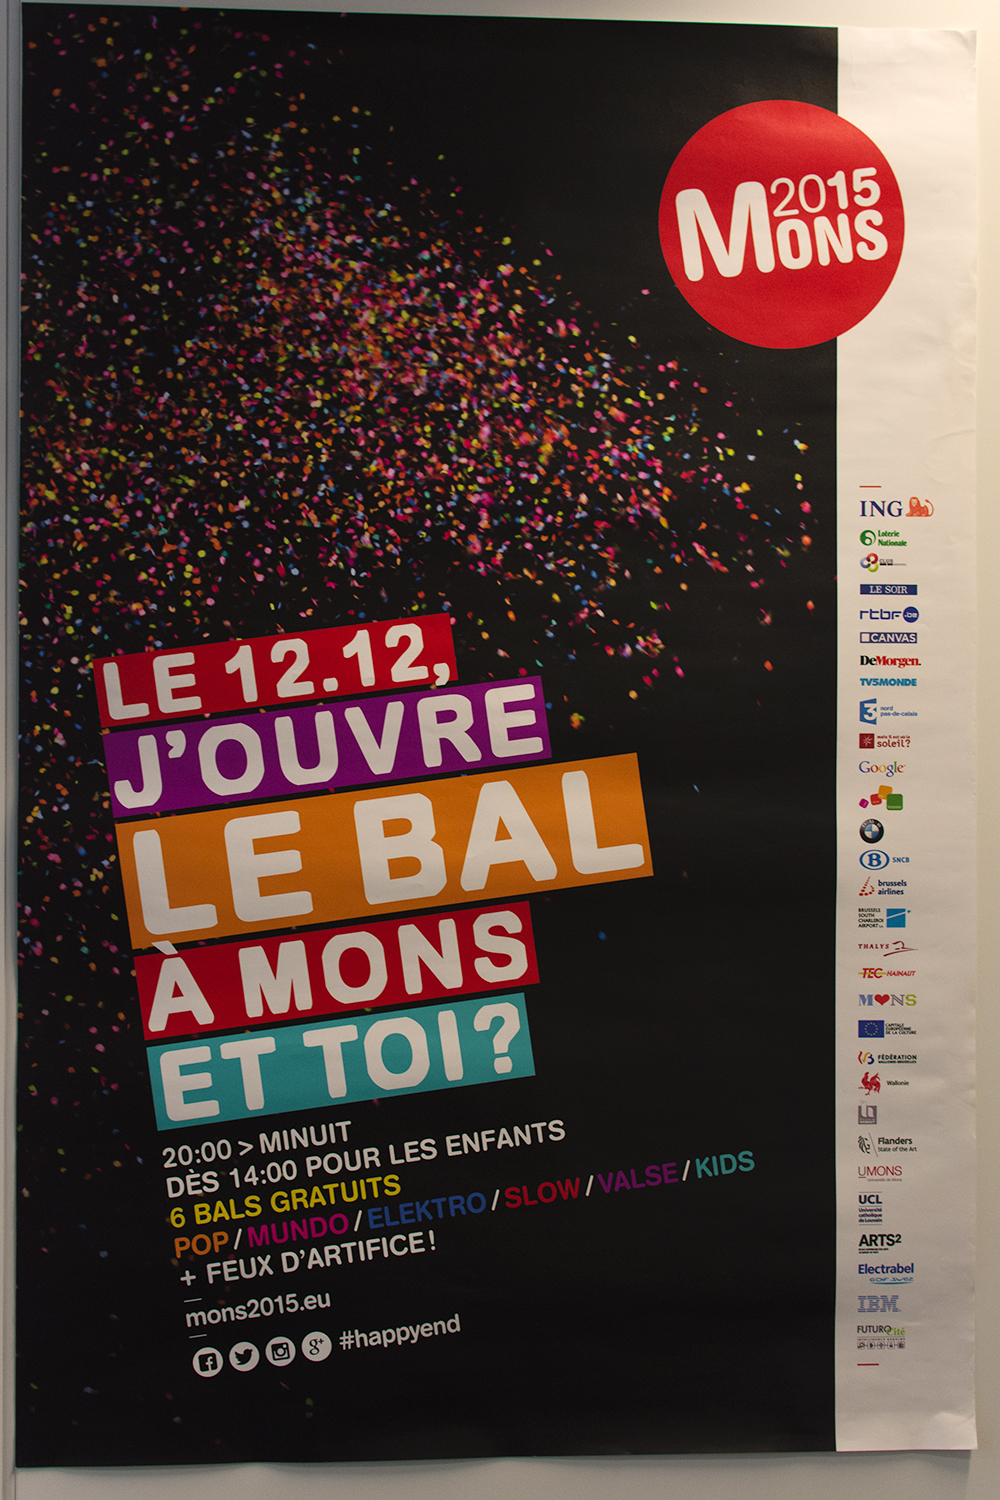 L’affiche de la soirée d’ouverture de Mons 2015 est affichée dans le bureau de Sylvain Pasqua